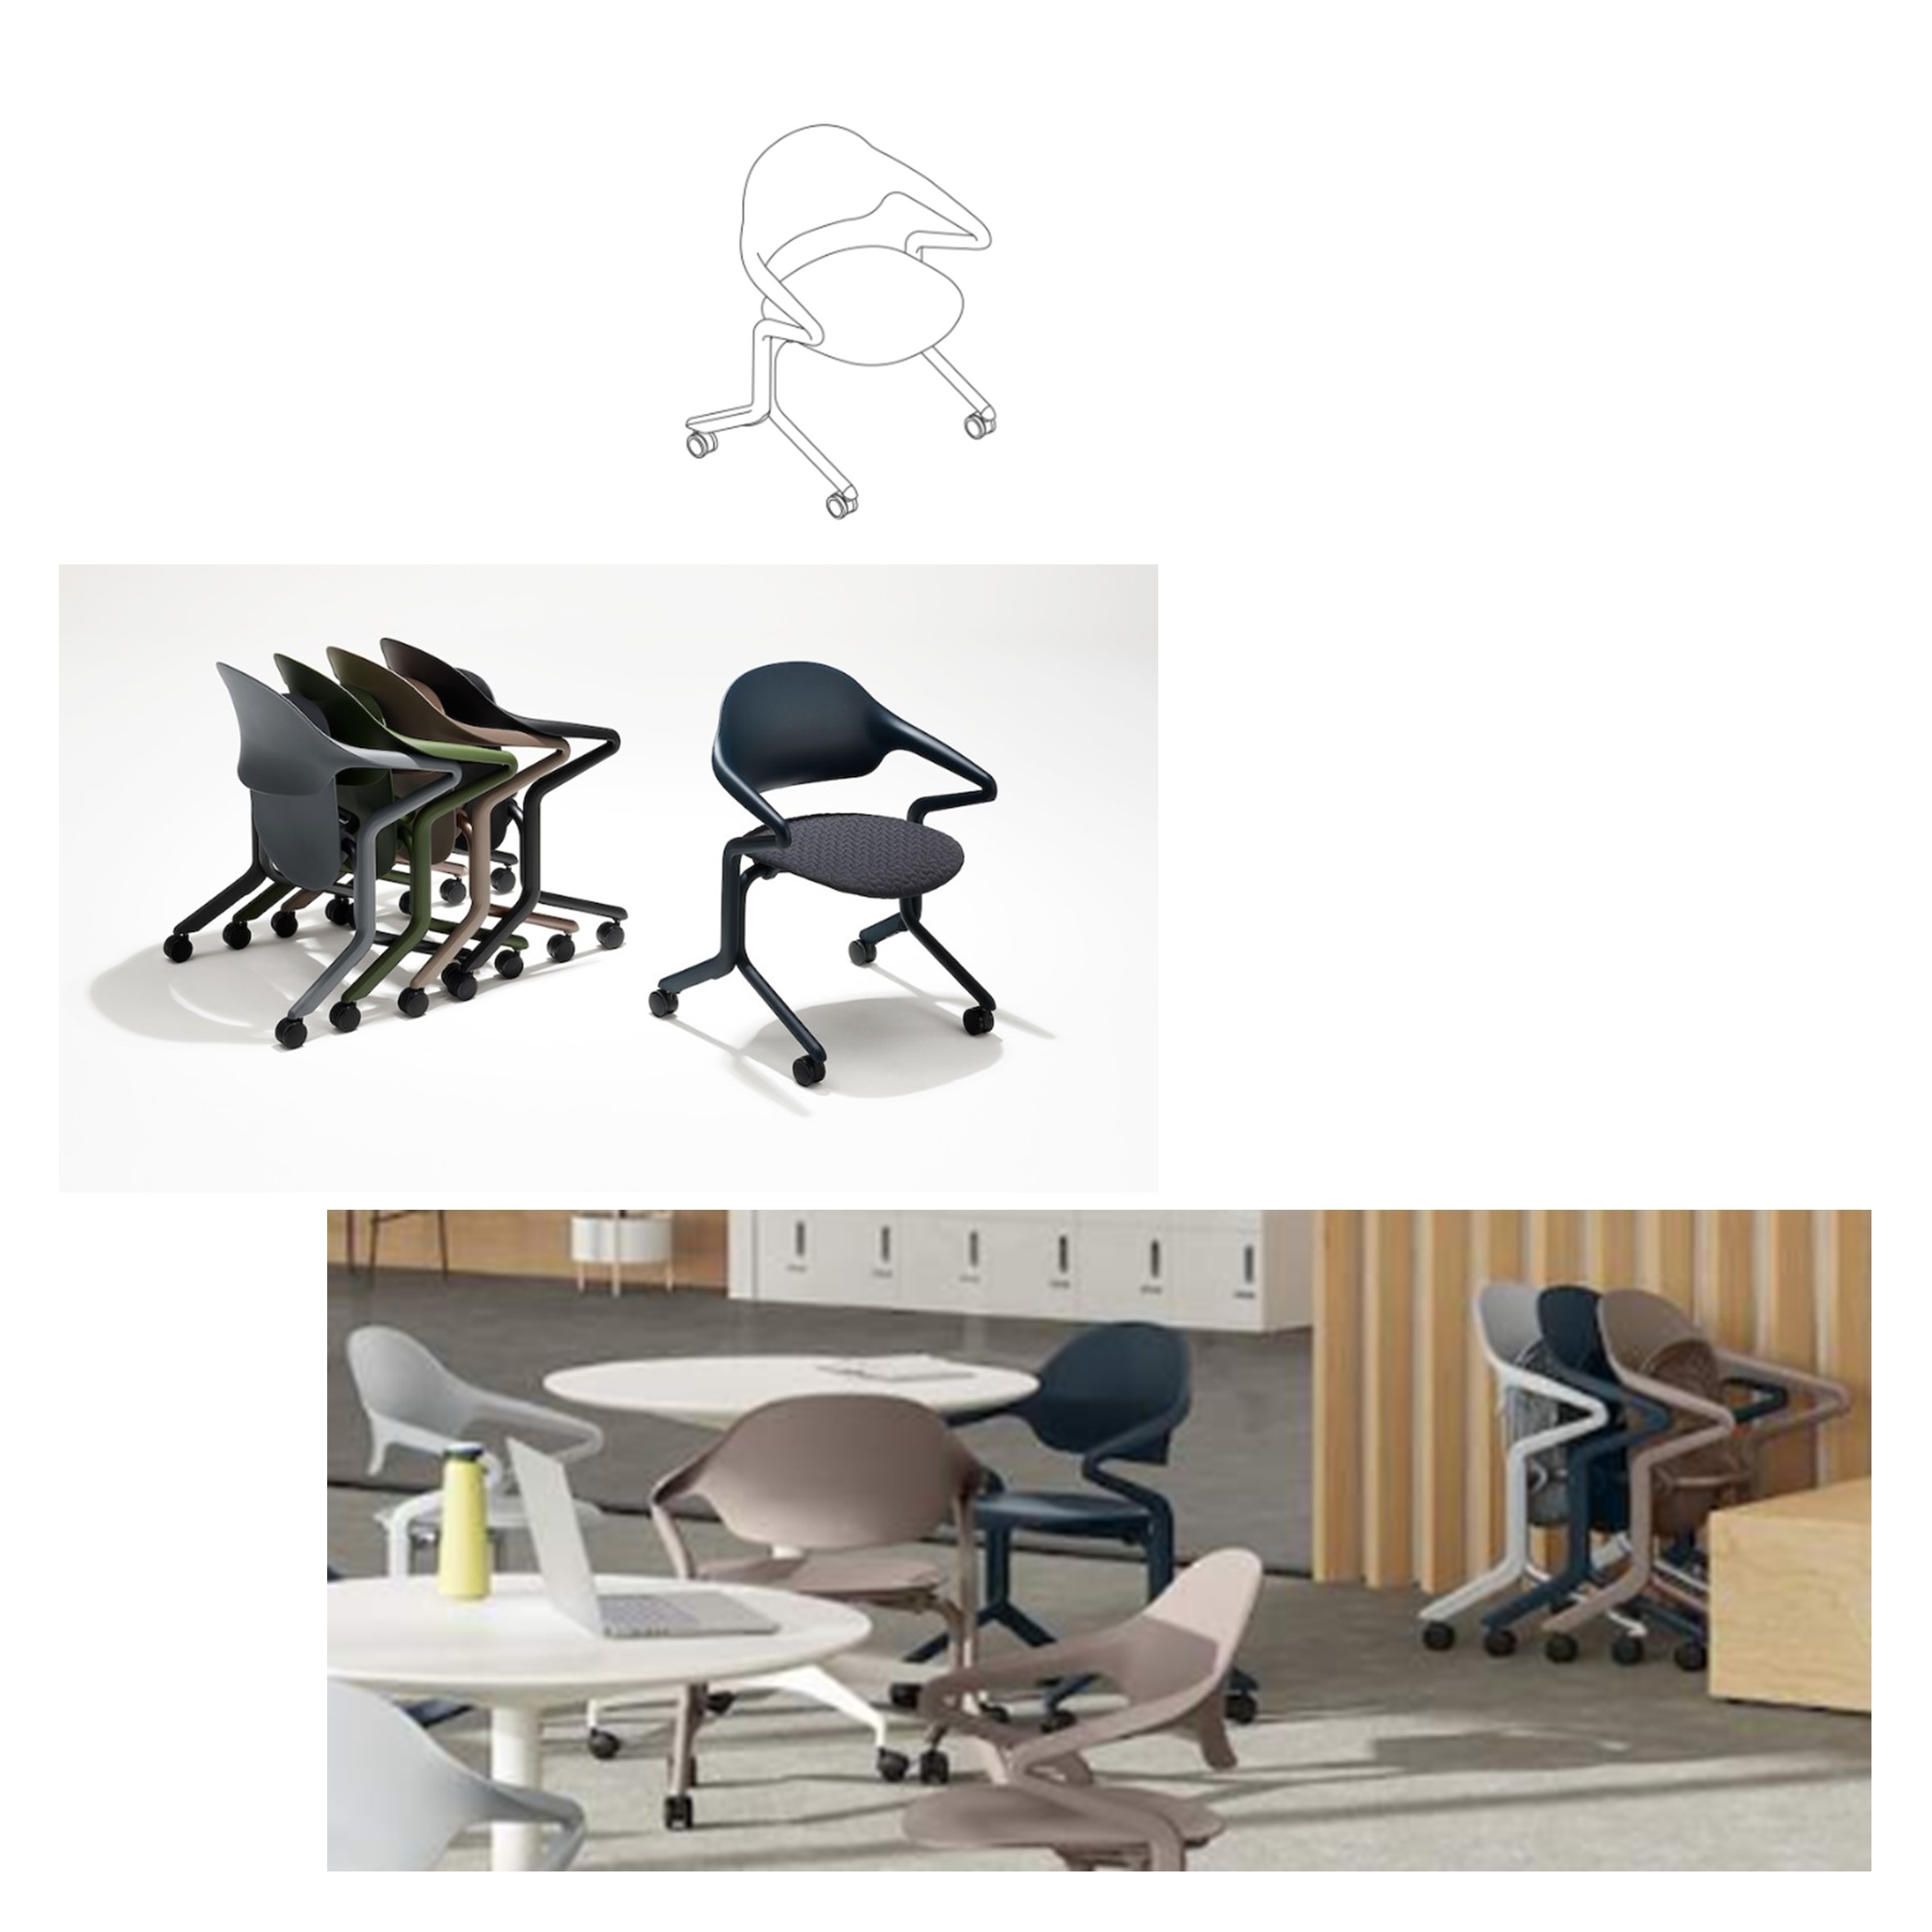 De revolutionaire Fuld Nesting Chair; een ergonomisch en praktisch meesterwerk